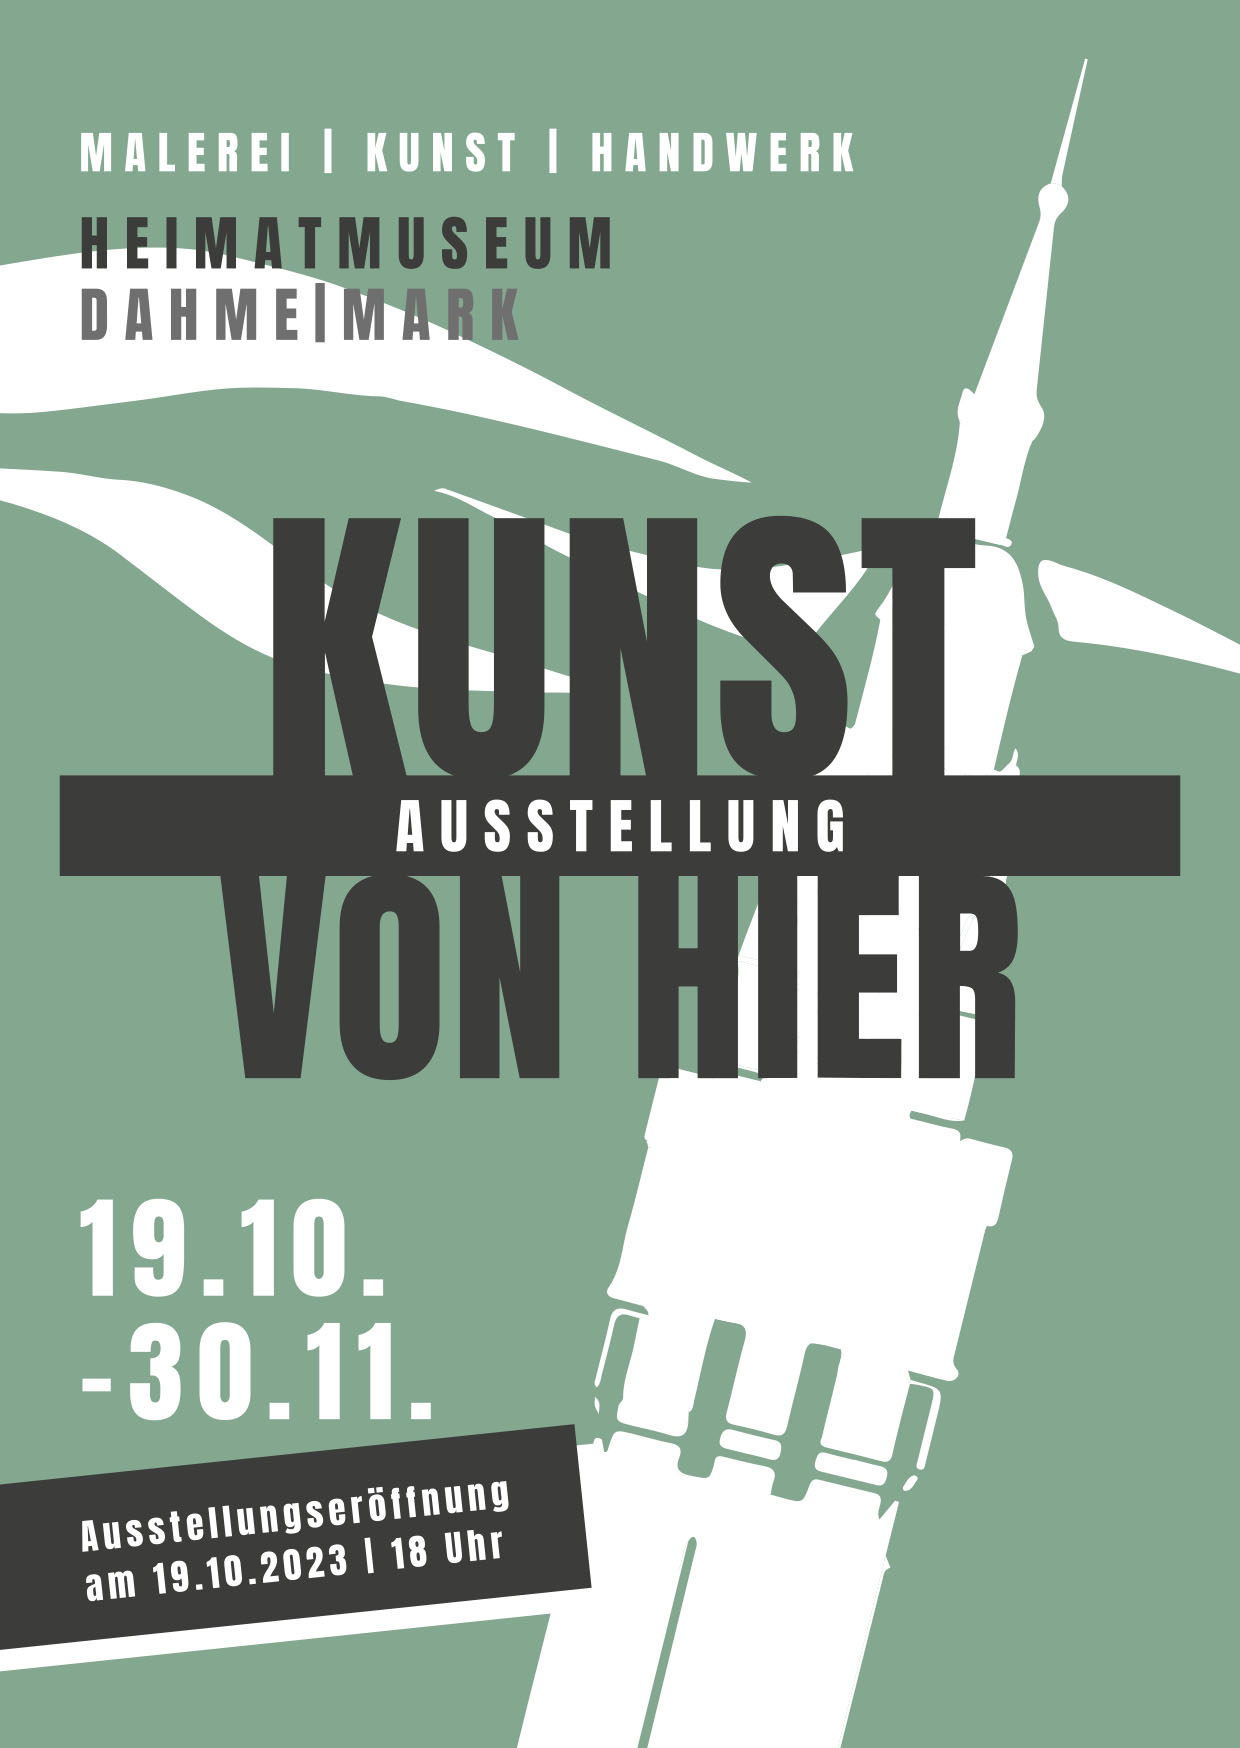 KUNST VON HIER - Ausstellung im Heimatmuseum